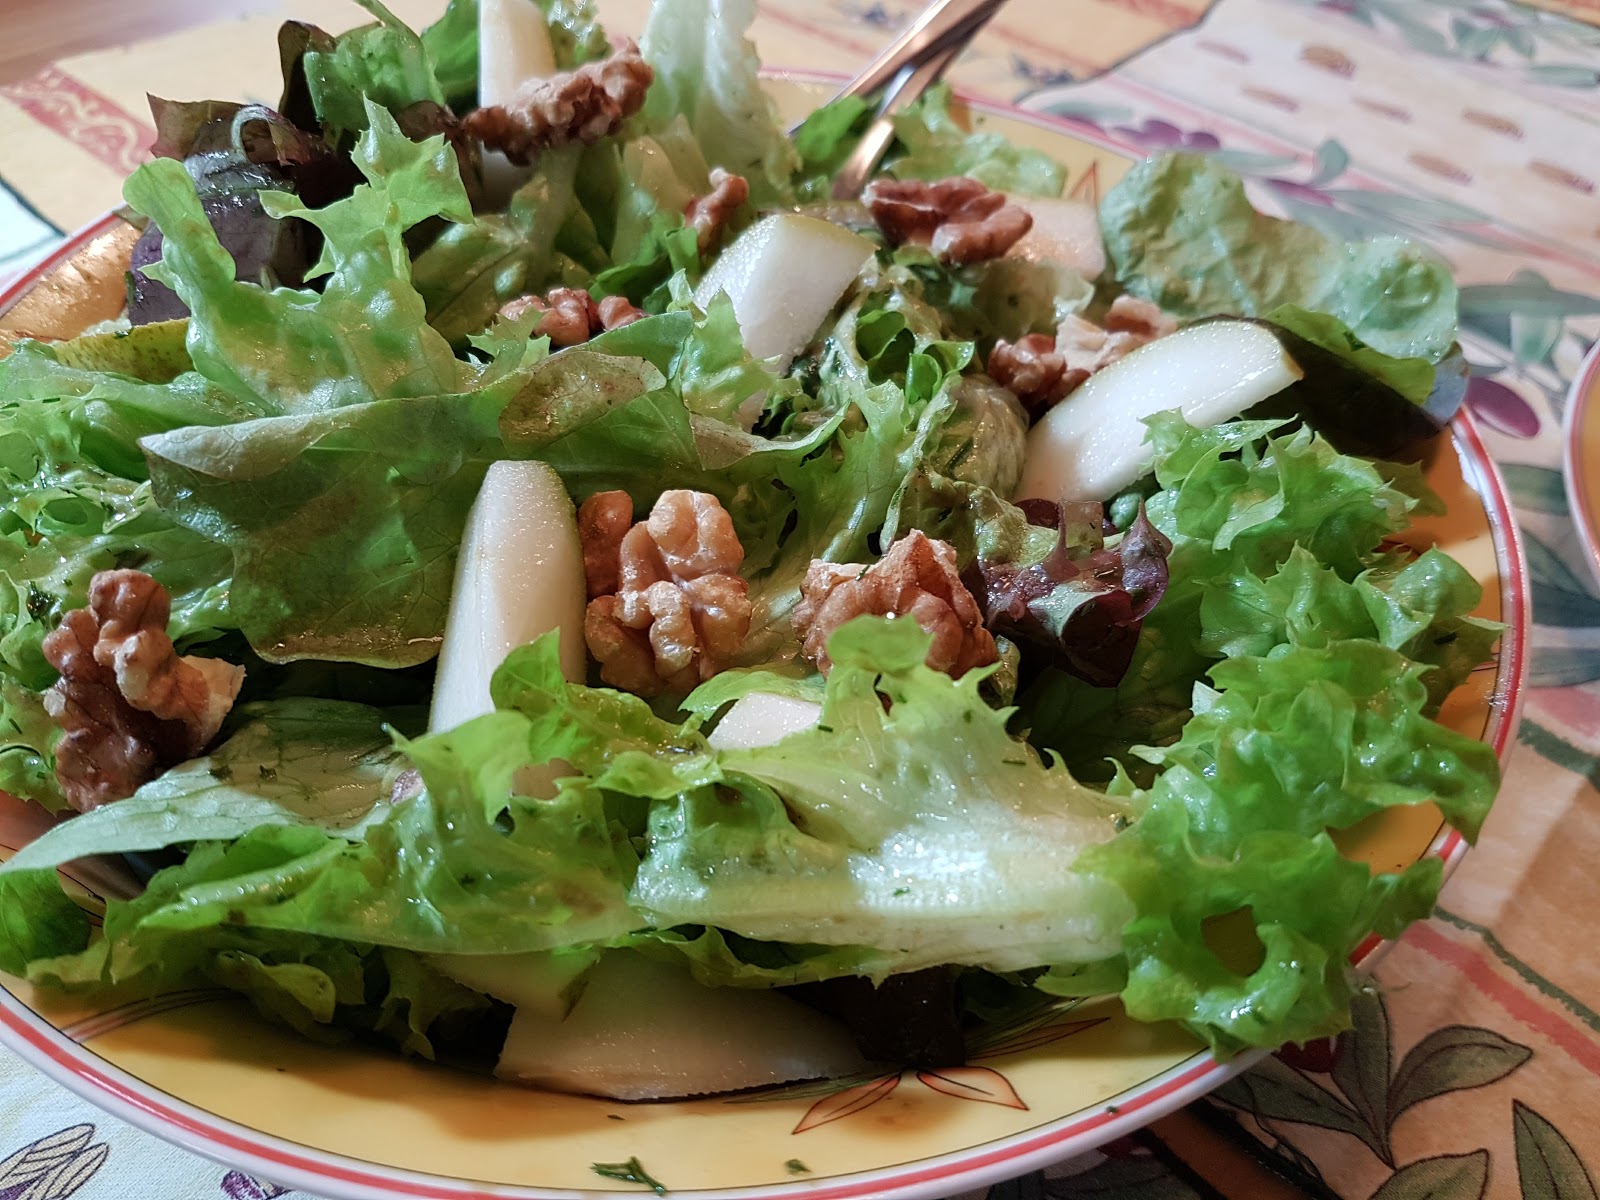 Aus dem Lameng: Herbstlicher Salat mit Birne und Walnüssen